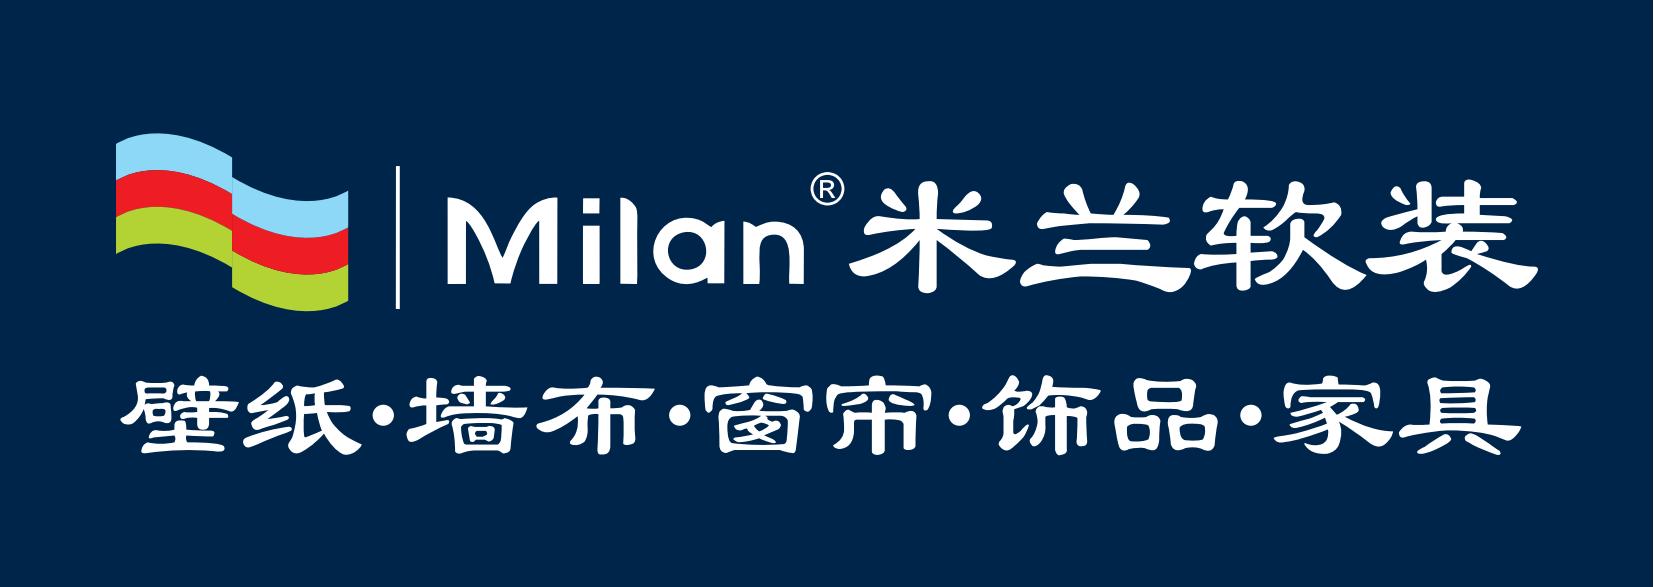 米兰饰品logo_01(1).jpg